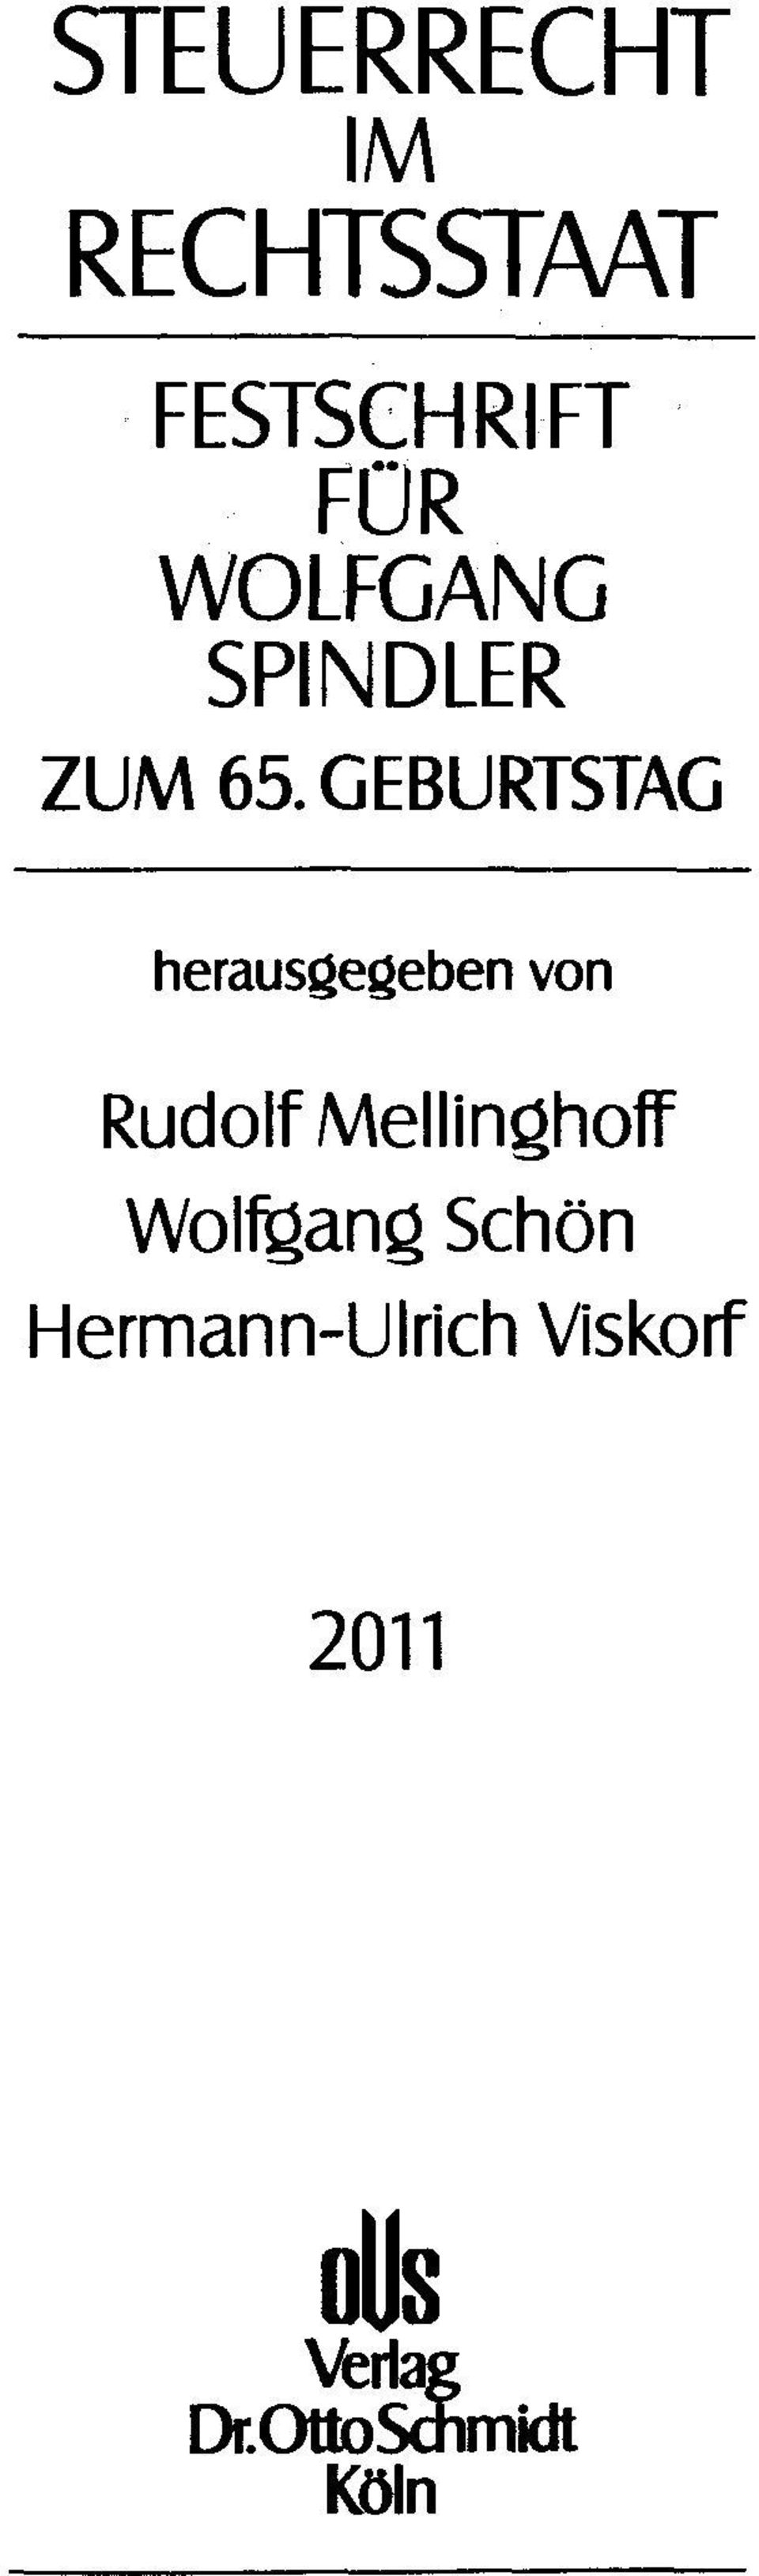 GEBURTSTAG herausgegeben von Rudolf